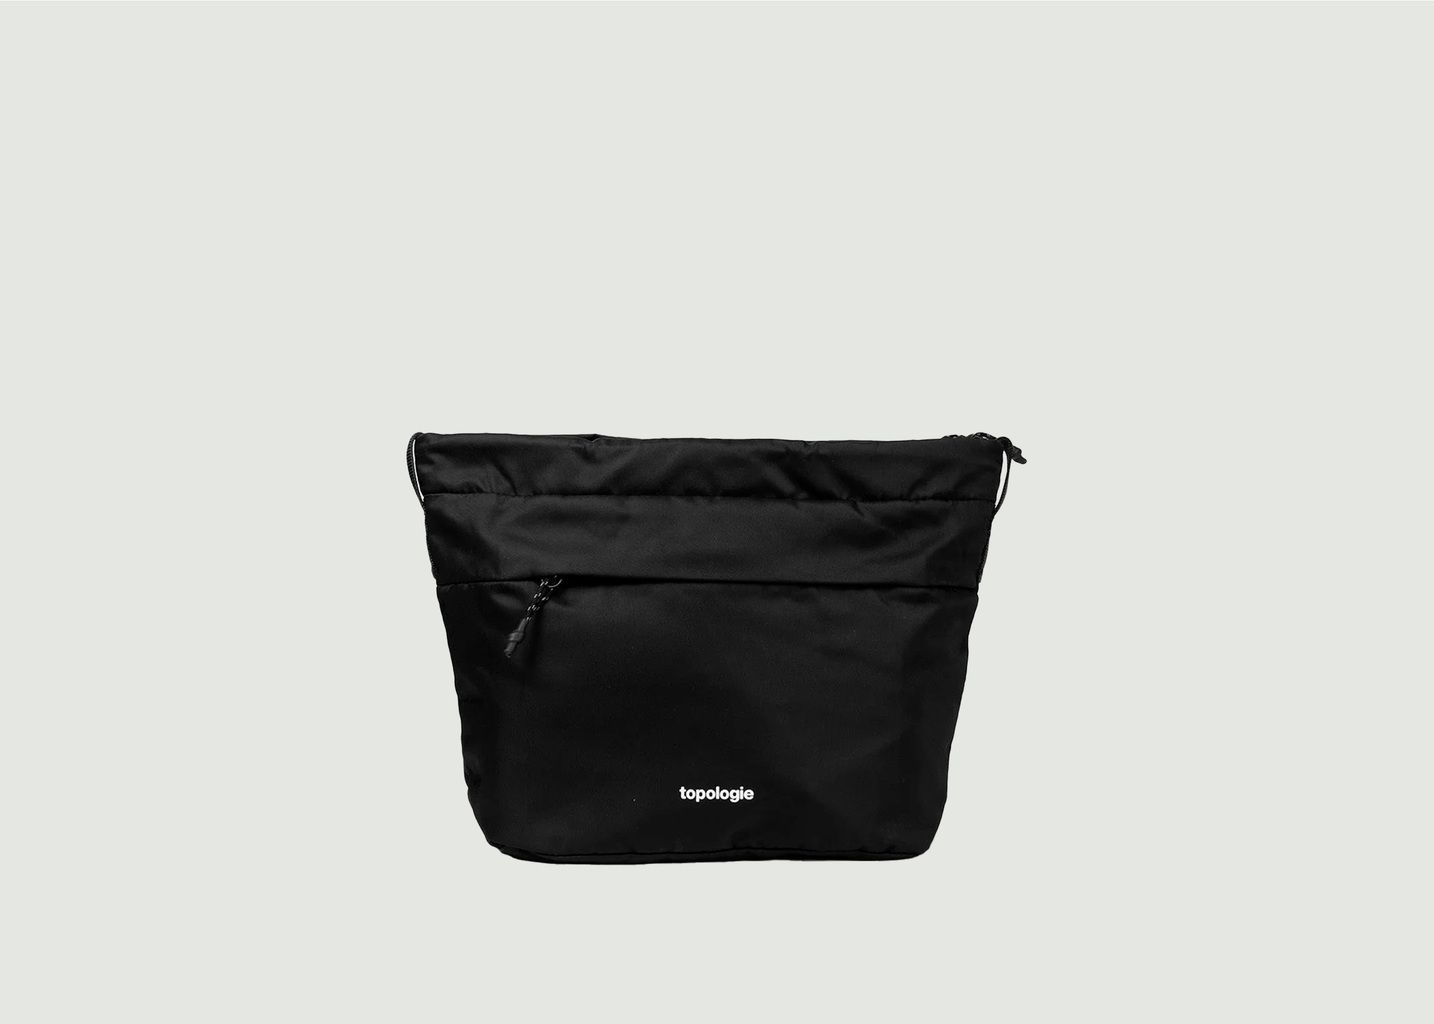 Topologie Messenger Bag